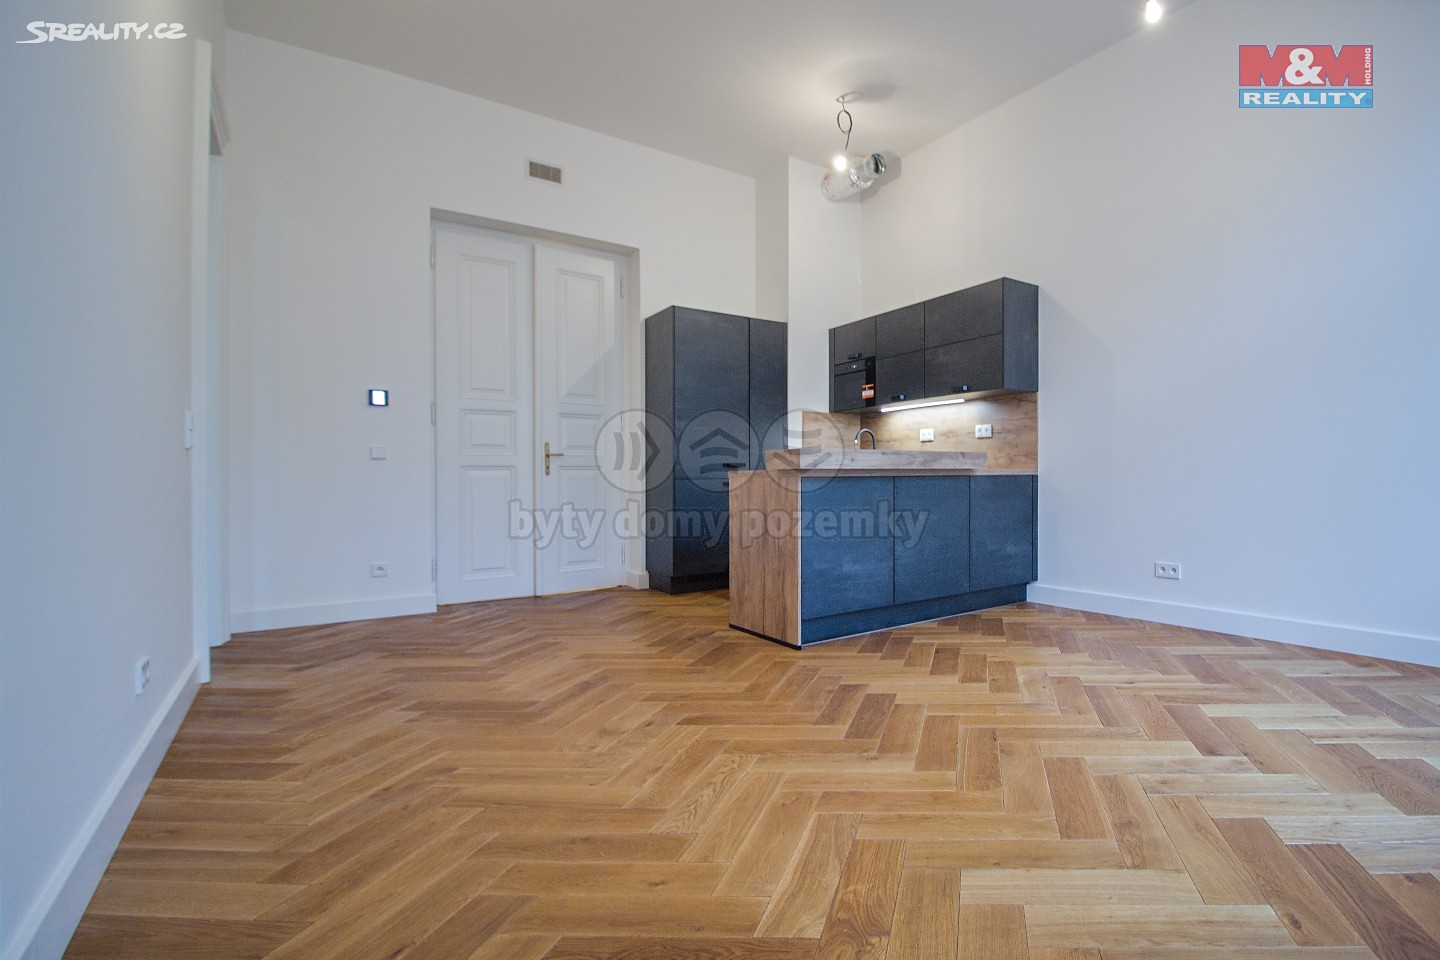 Prodej bytu 2+kk 75 m², Praha 1 - Nové Město